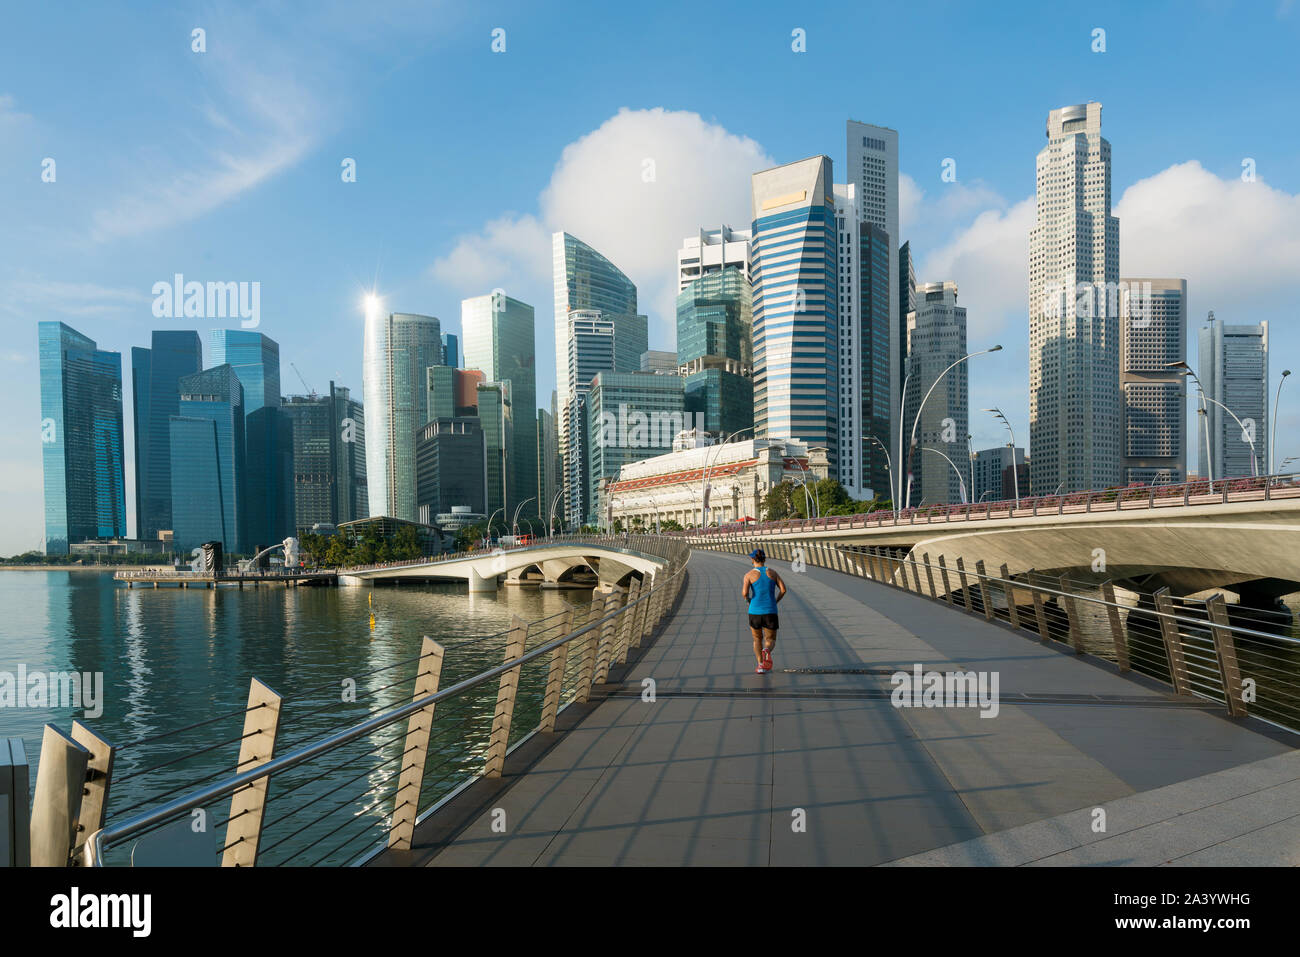 Menschen joggen am Morgen in Singapur Geschäftsviertel Skyline der Innenstadt Gebäude mit touristischen Sehenswürdigkeiten in Tag in der Marina Bay, Singapore. Stockfoto